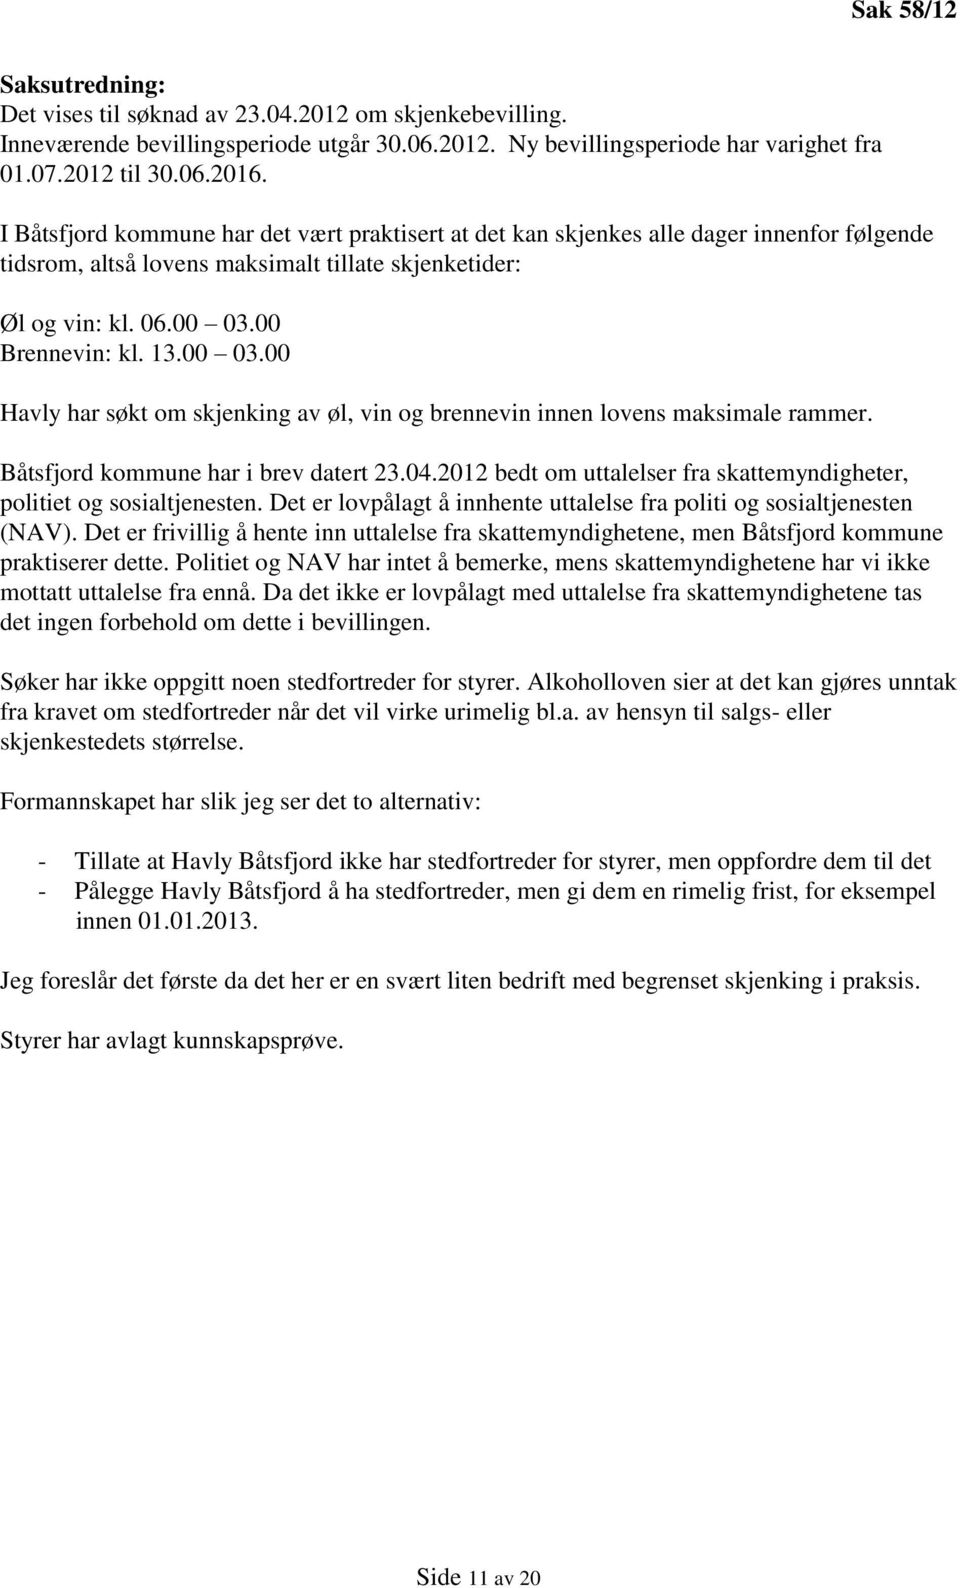 00 Brennevin: kl. 13.00 03.00 Havly har søkt om skjenking av øl, vin og brennevin innen lovens maksimale rammer. Båtsfjord kommune har i brev datert 23.04.